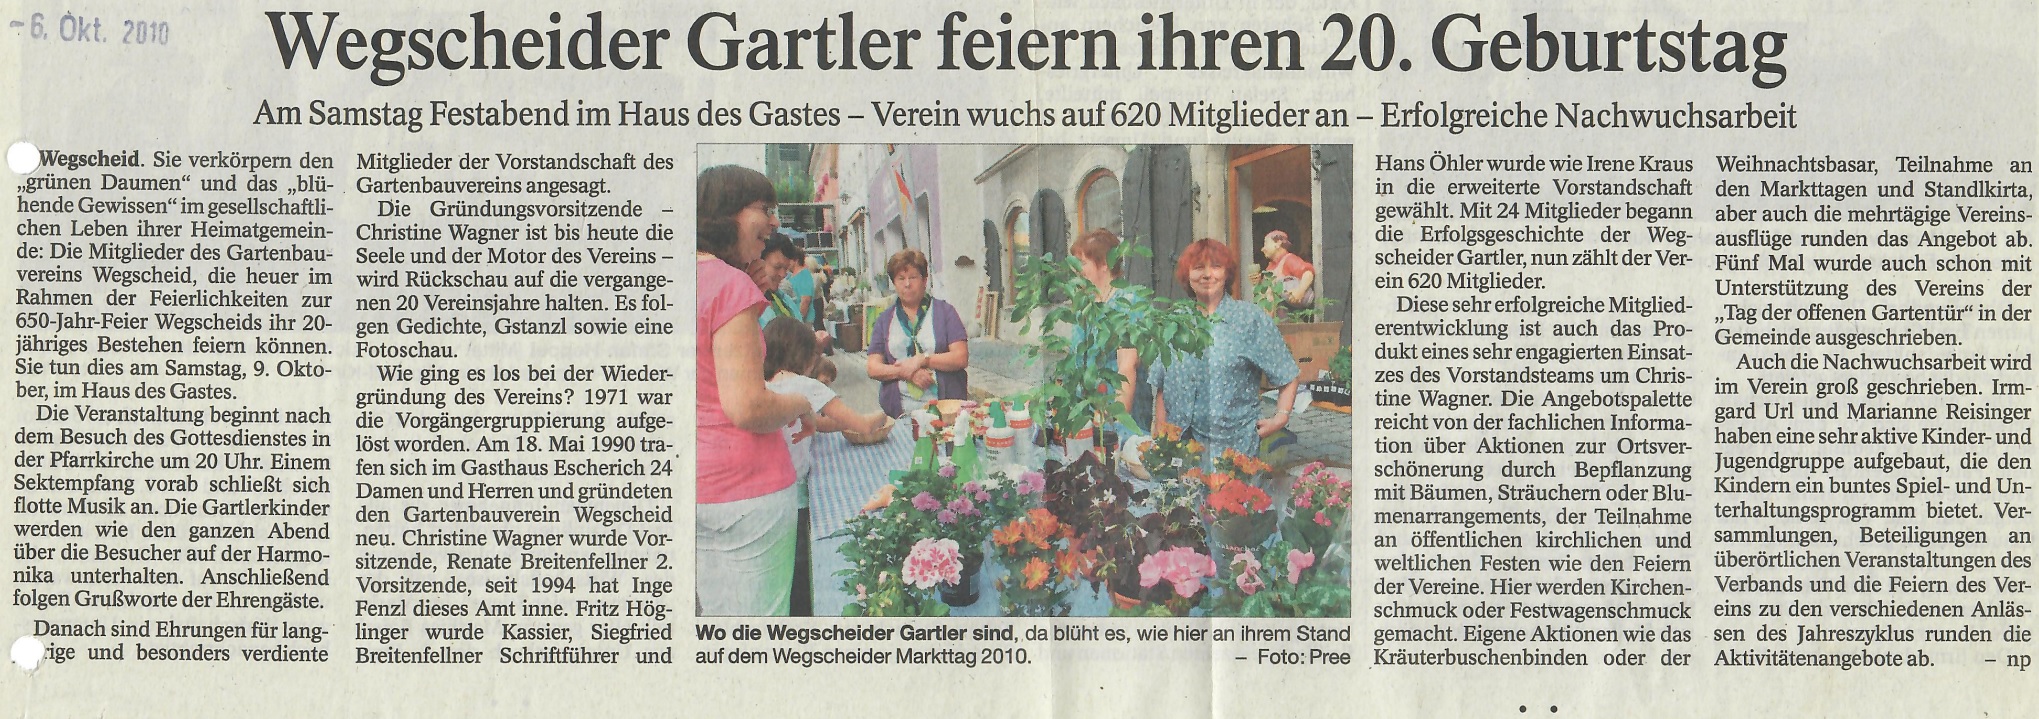 Wegscheider Gartler feiern ihren 20. Geburtstag, Passauer Neue Presse vom 06. Oktober 2010